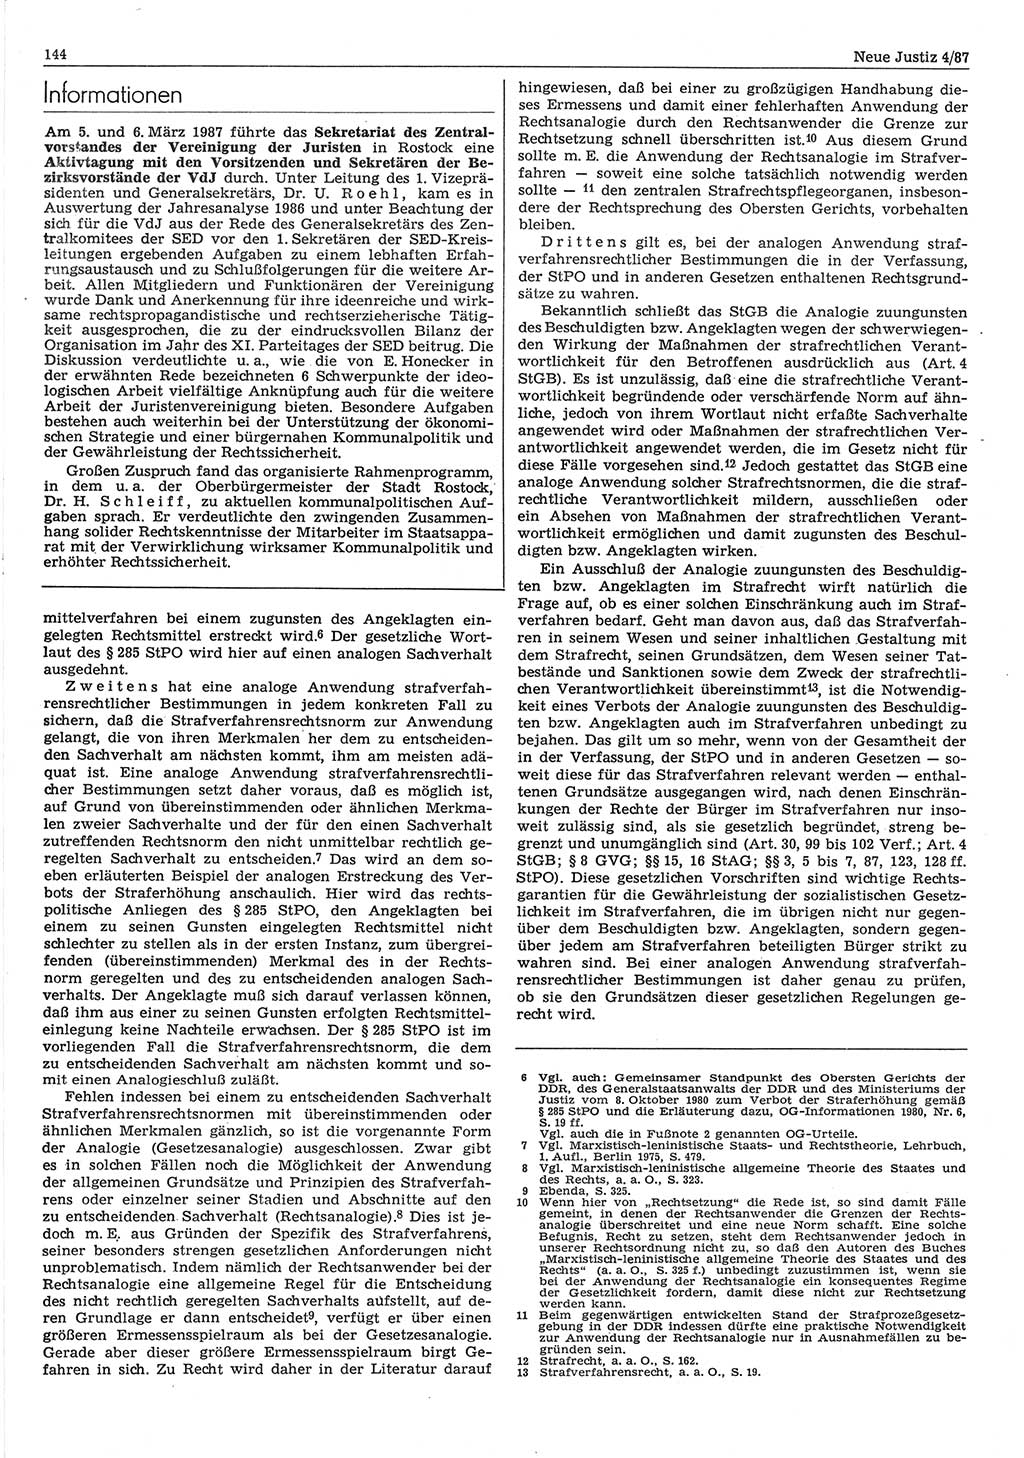 Neue Justiz (NJ), Zeitschrift für sozialistisches Recht und Gesetzlichkeit [Deutsche Demokratische Republik (DDR)], 41. Jahrgang 1987, Seite 144 (NJ DDR 1987, S. 144)